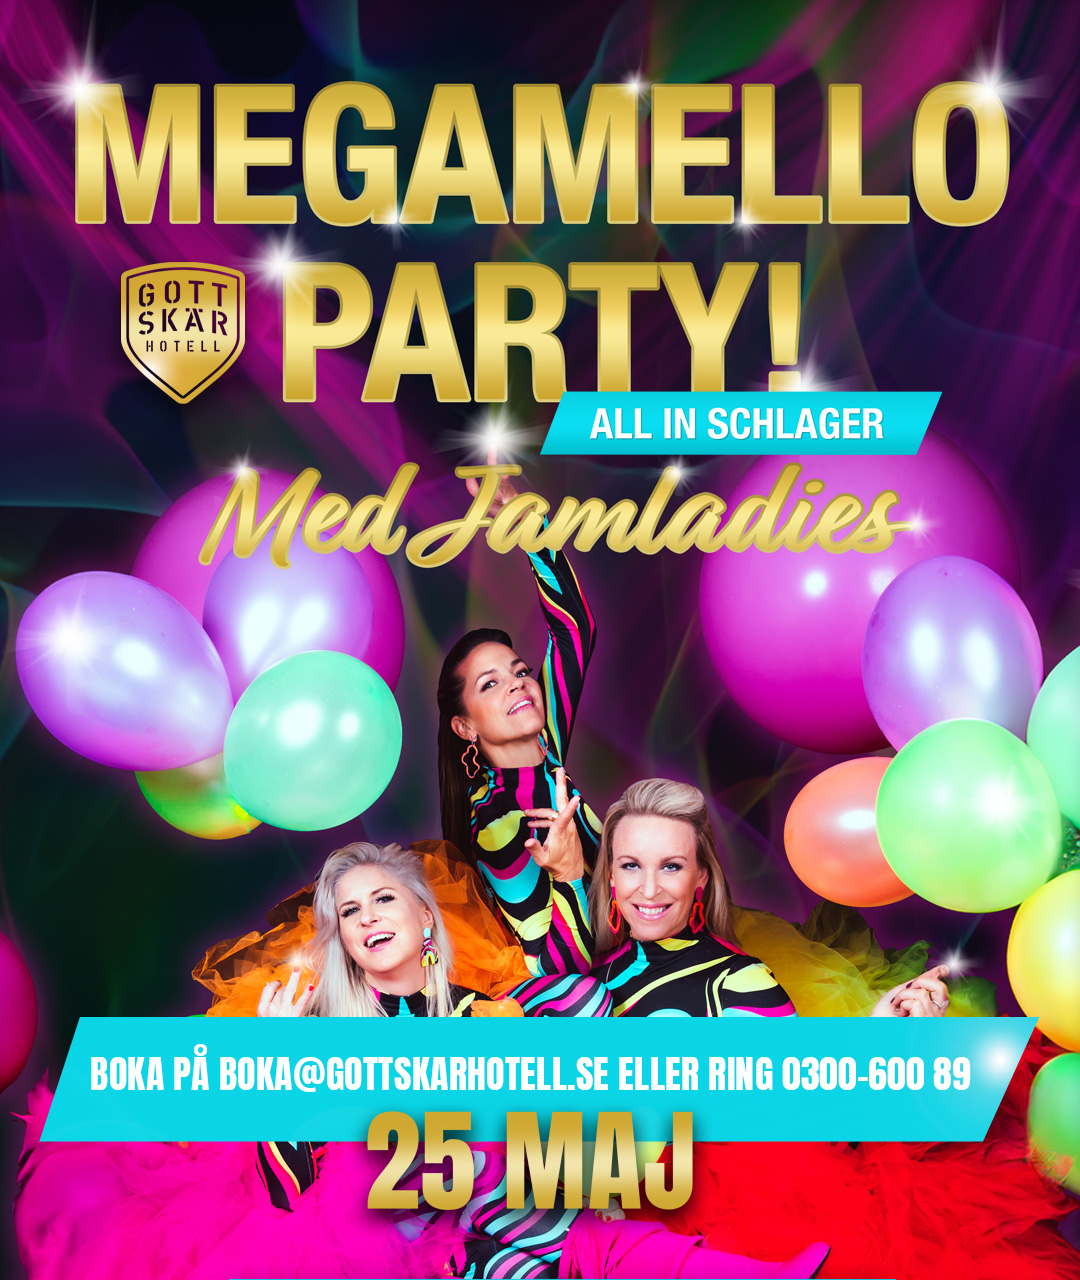 Megamello party